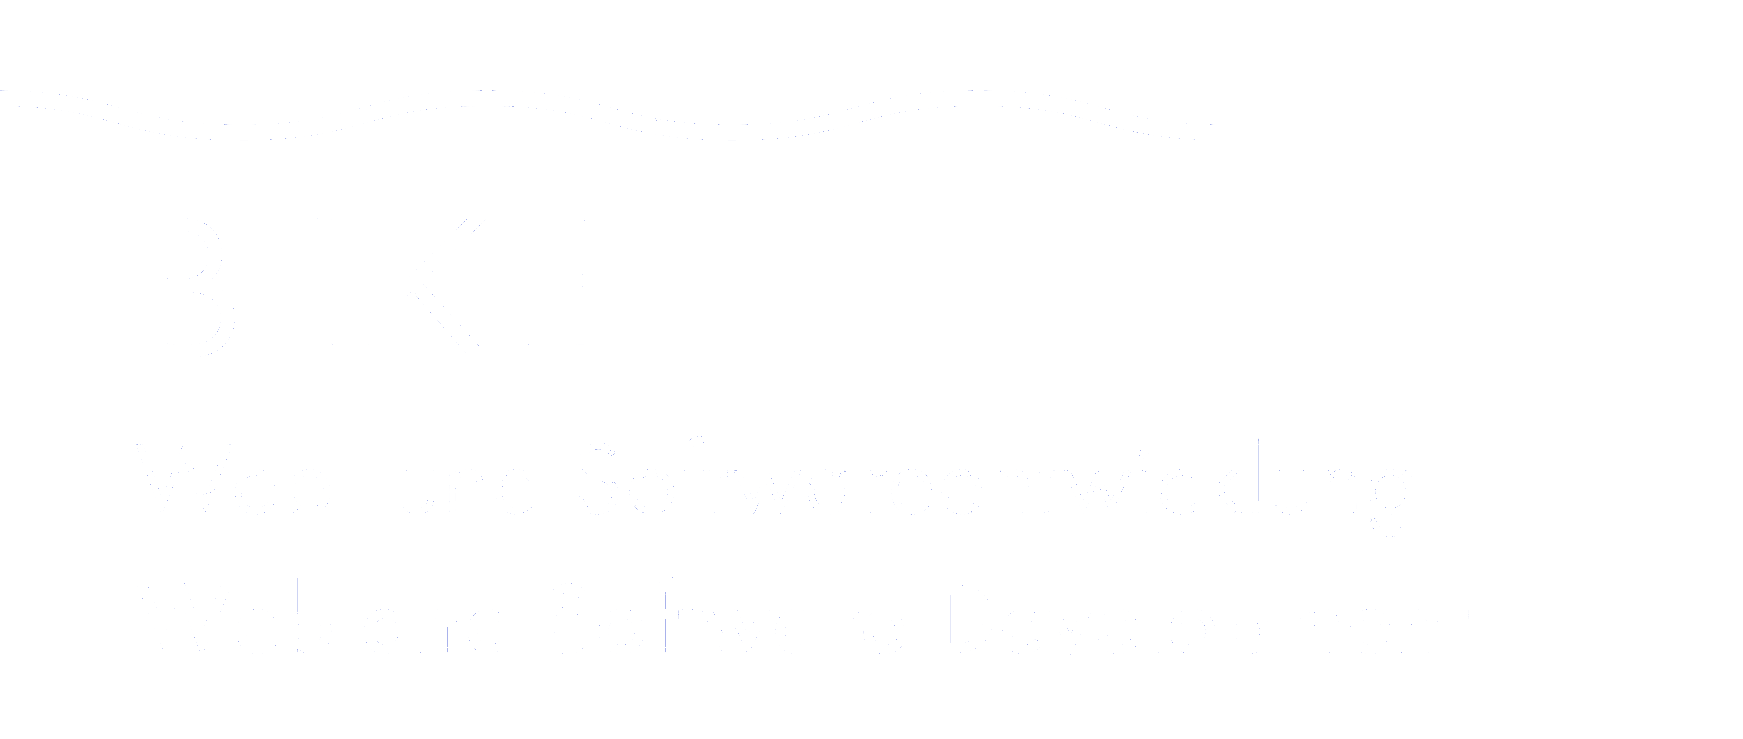 Bilke Web- und Softwareentwicklung